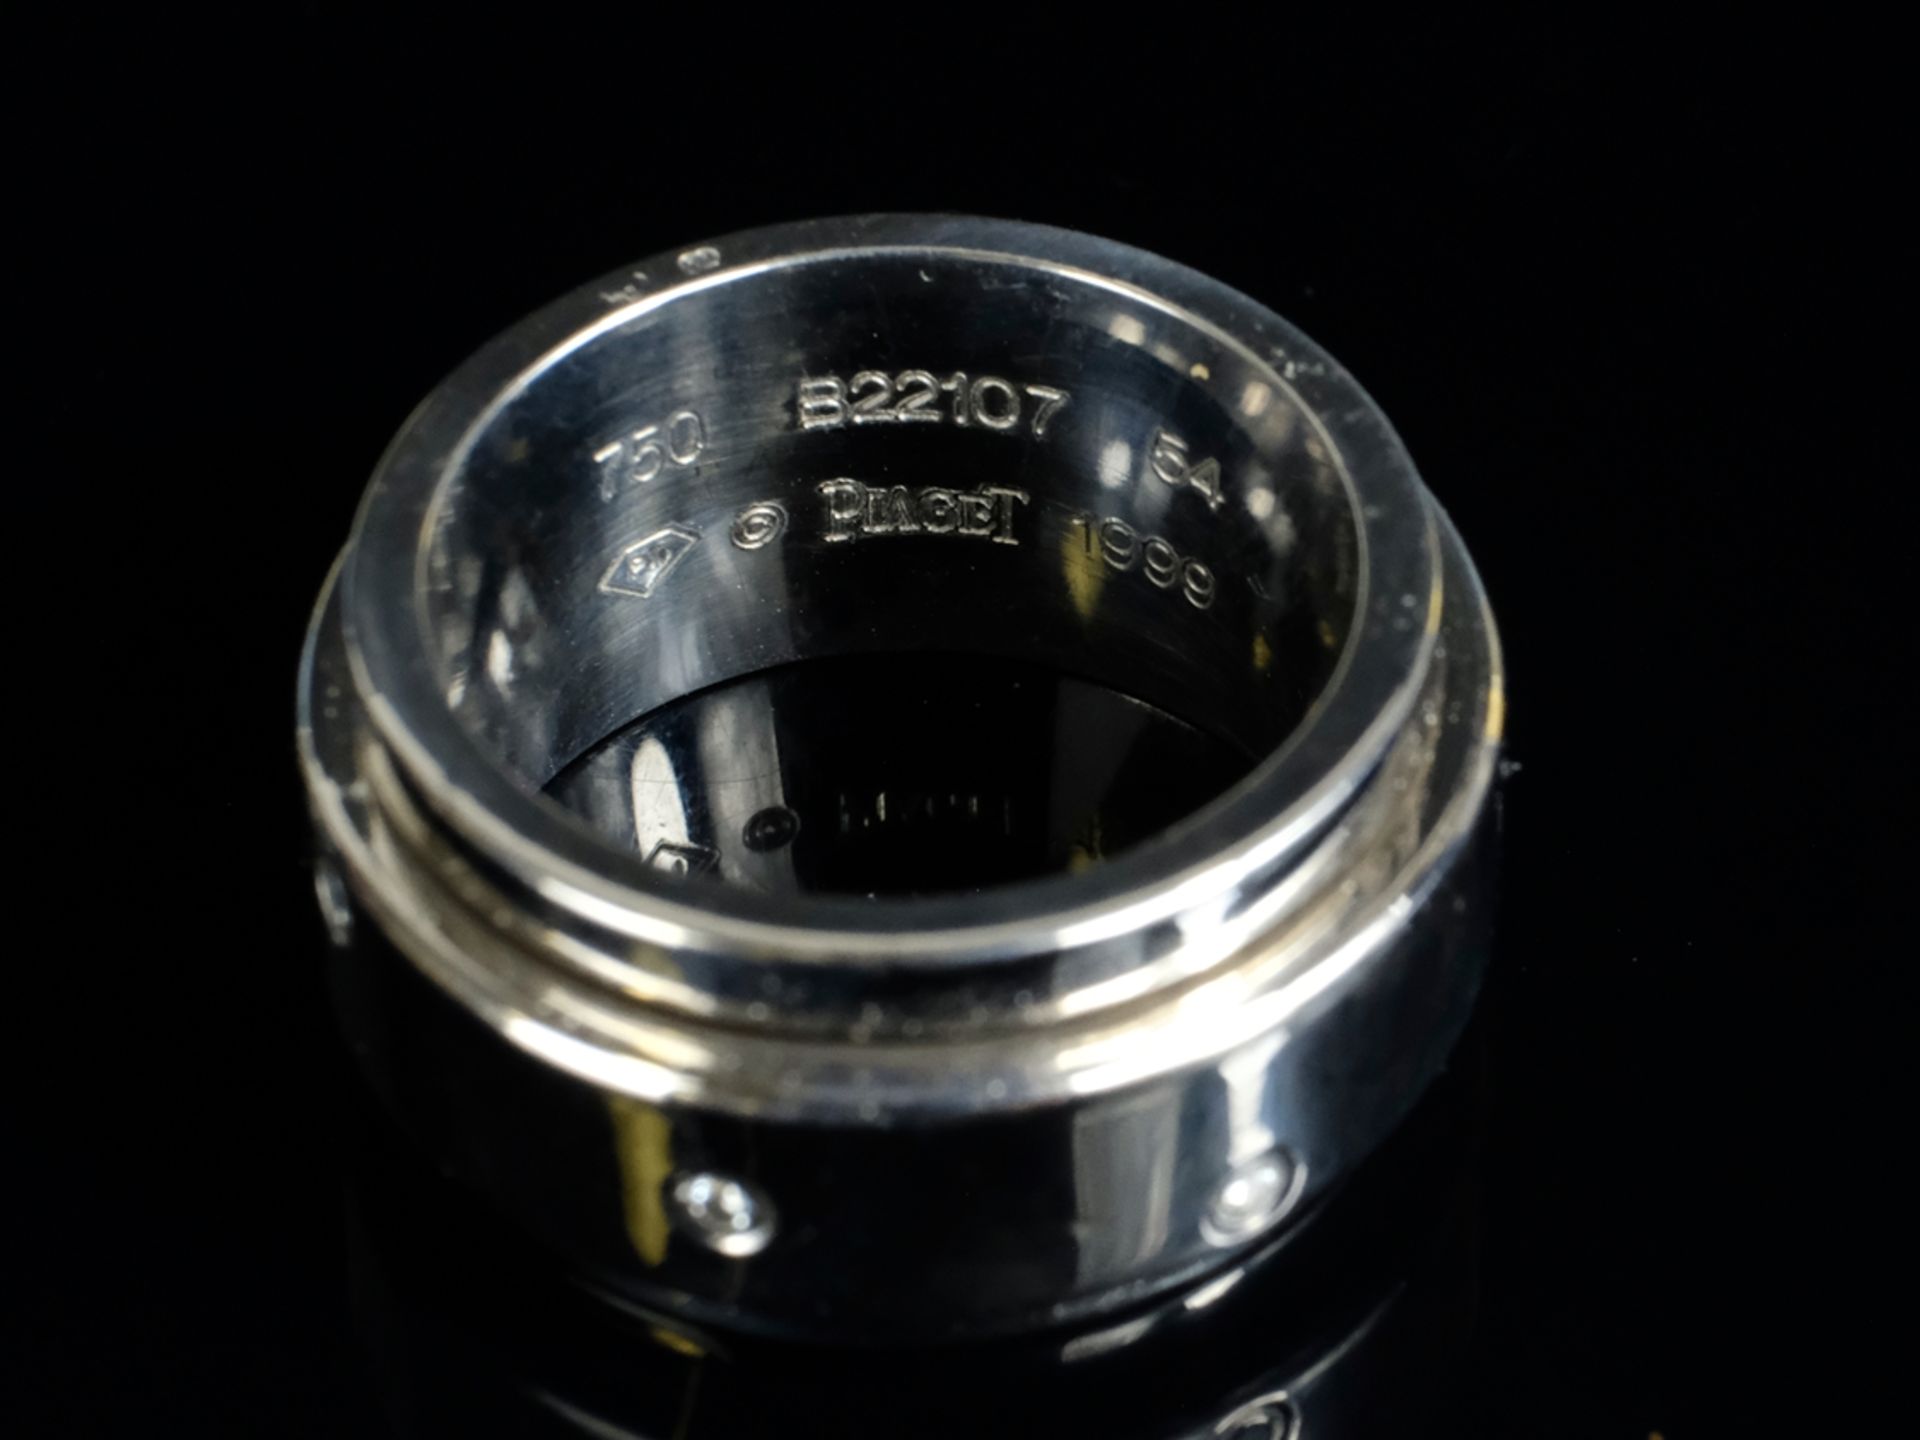 PIAGET-RING Modell „Possession“, sbesetzt mit sieben Brillanten, gesamt um 0,10ct, 750 WG - Bild 2 aus 2